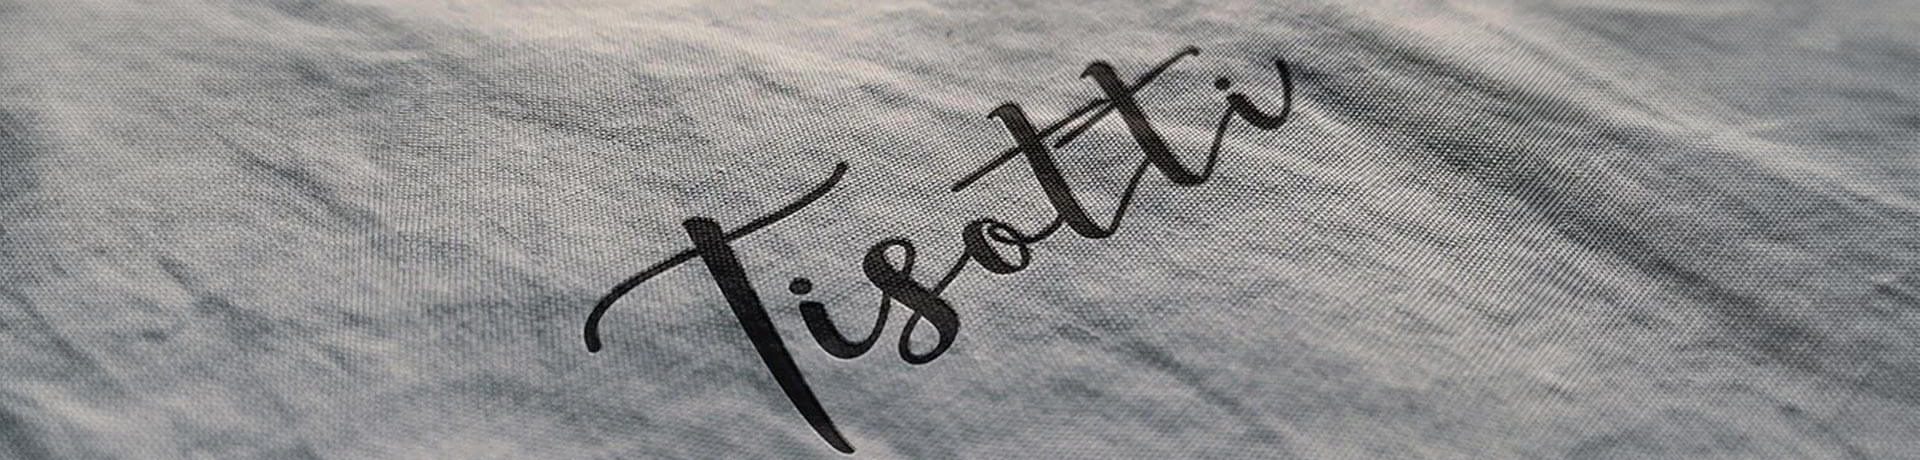 Tisotti-iletişim-banner